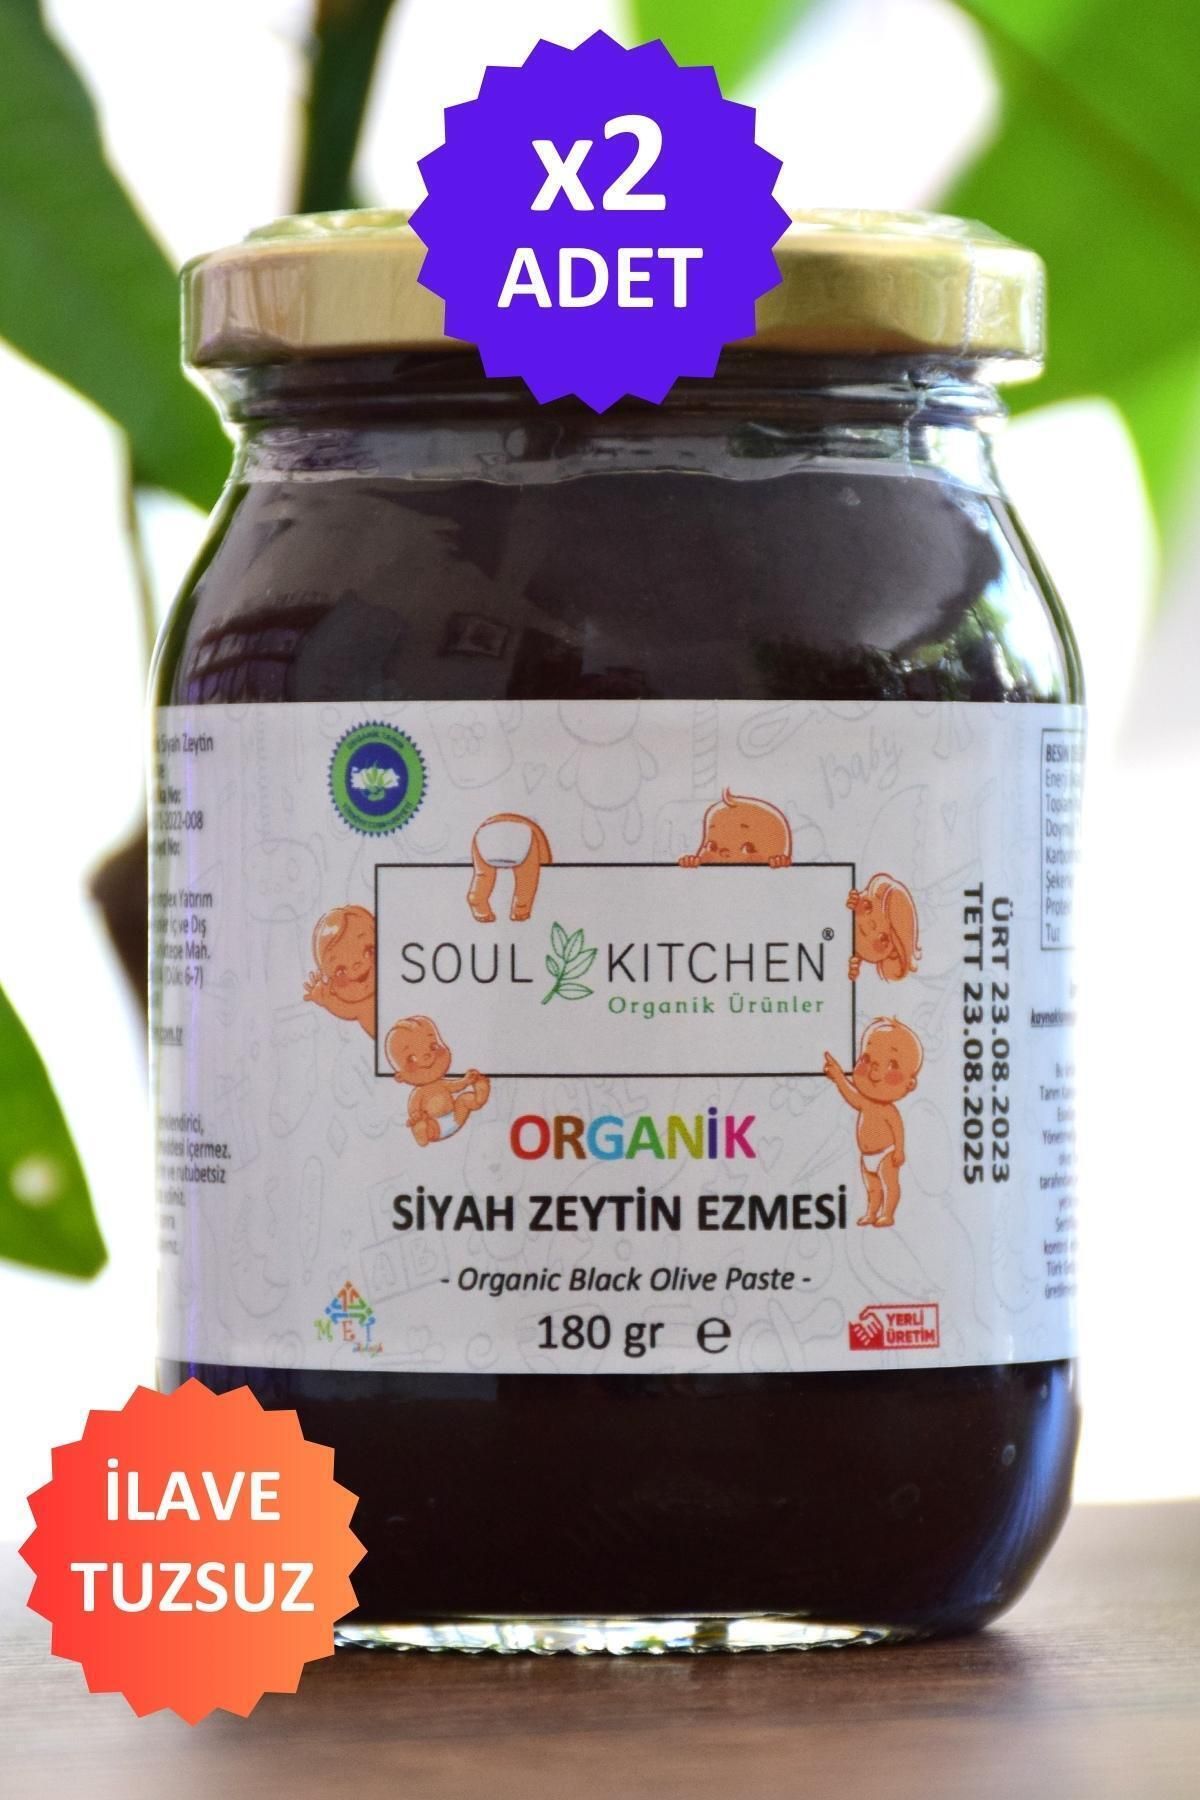 Soul Kitchen Organik Ürünler Organik Bebek Zeytin Ezmesi 180gr 2'li eko paket